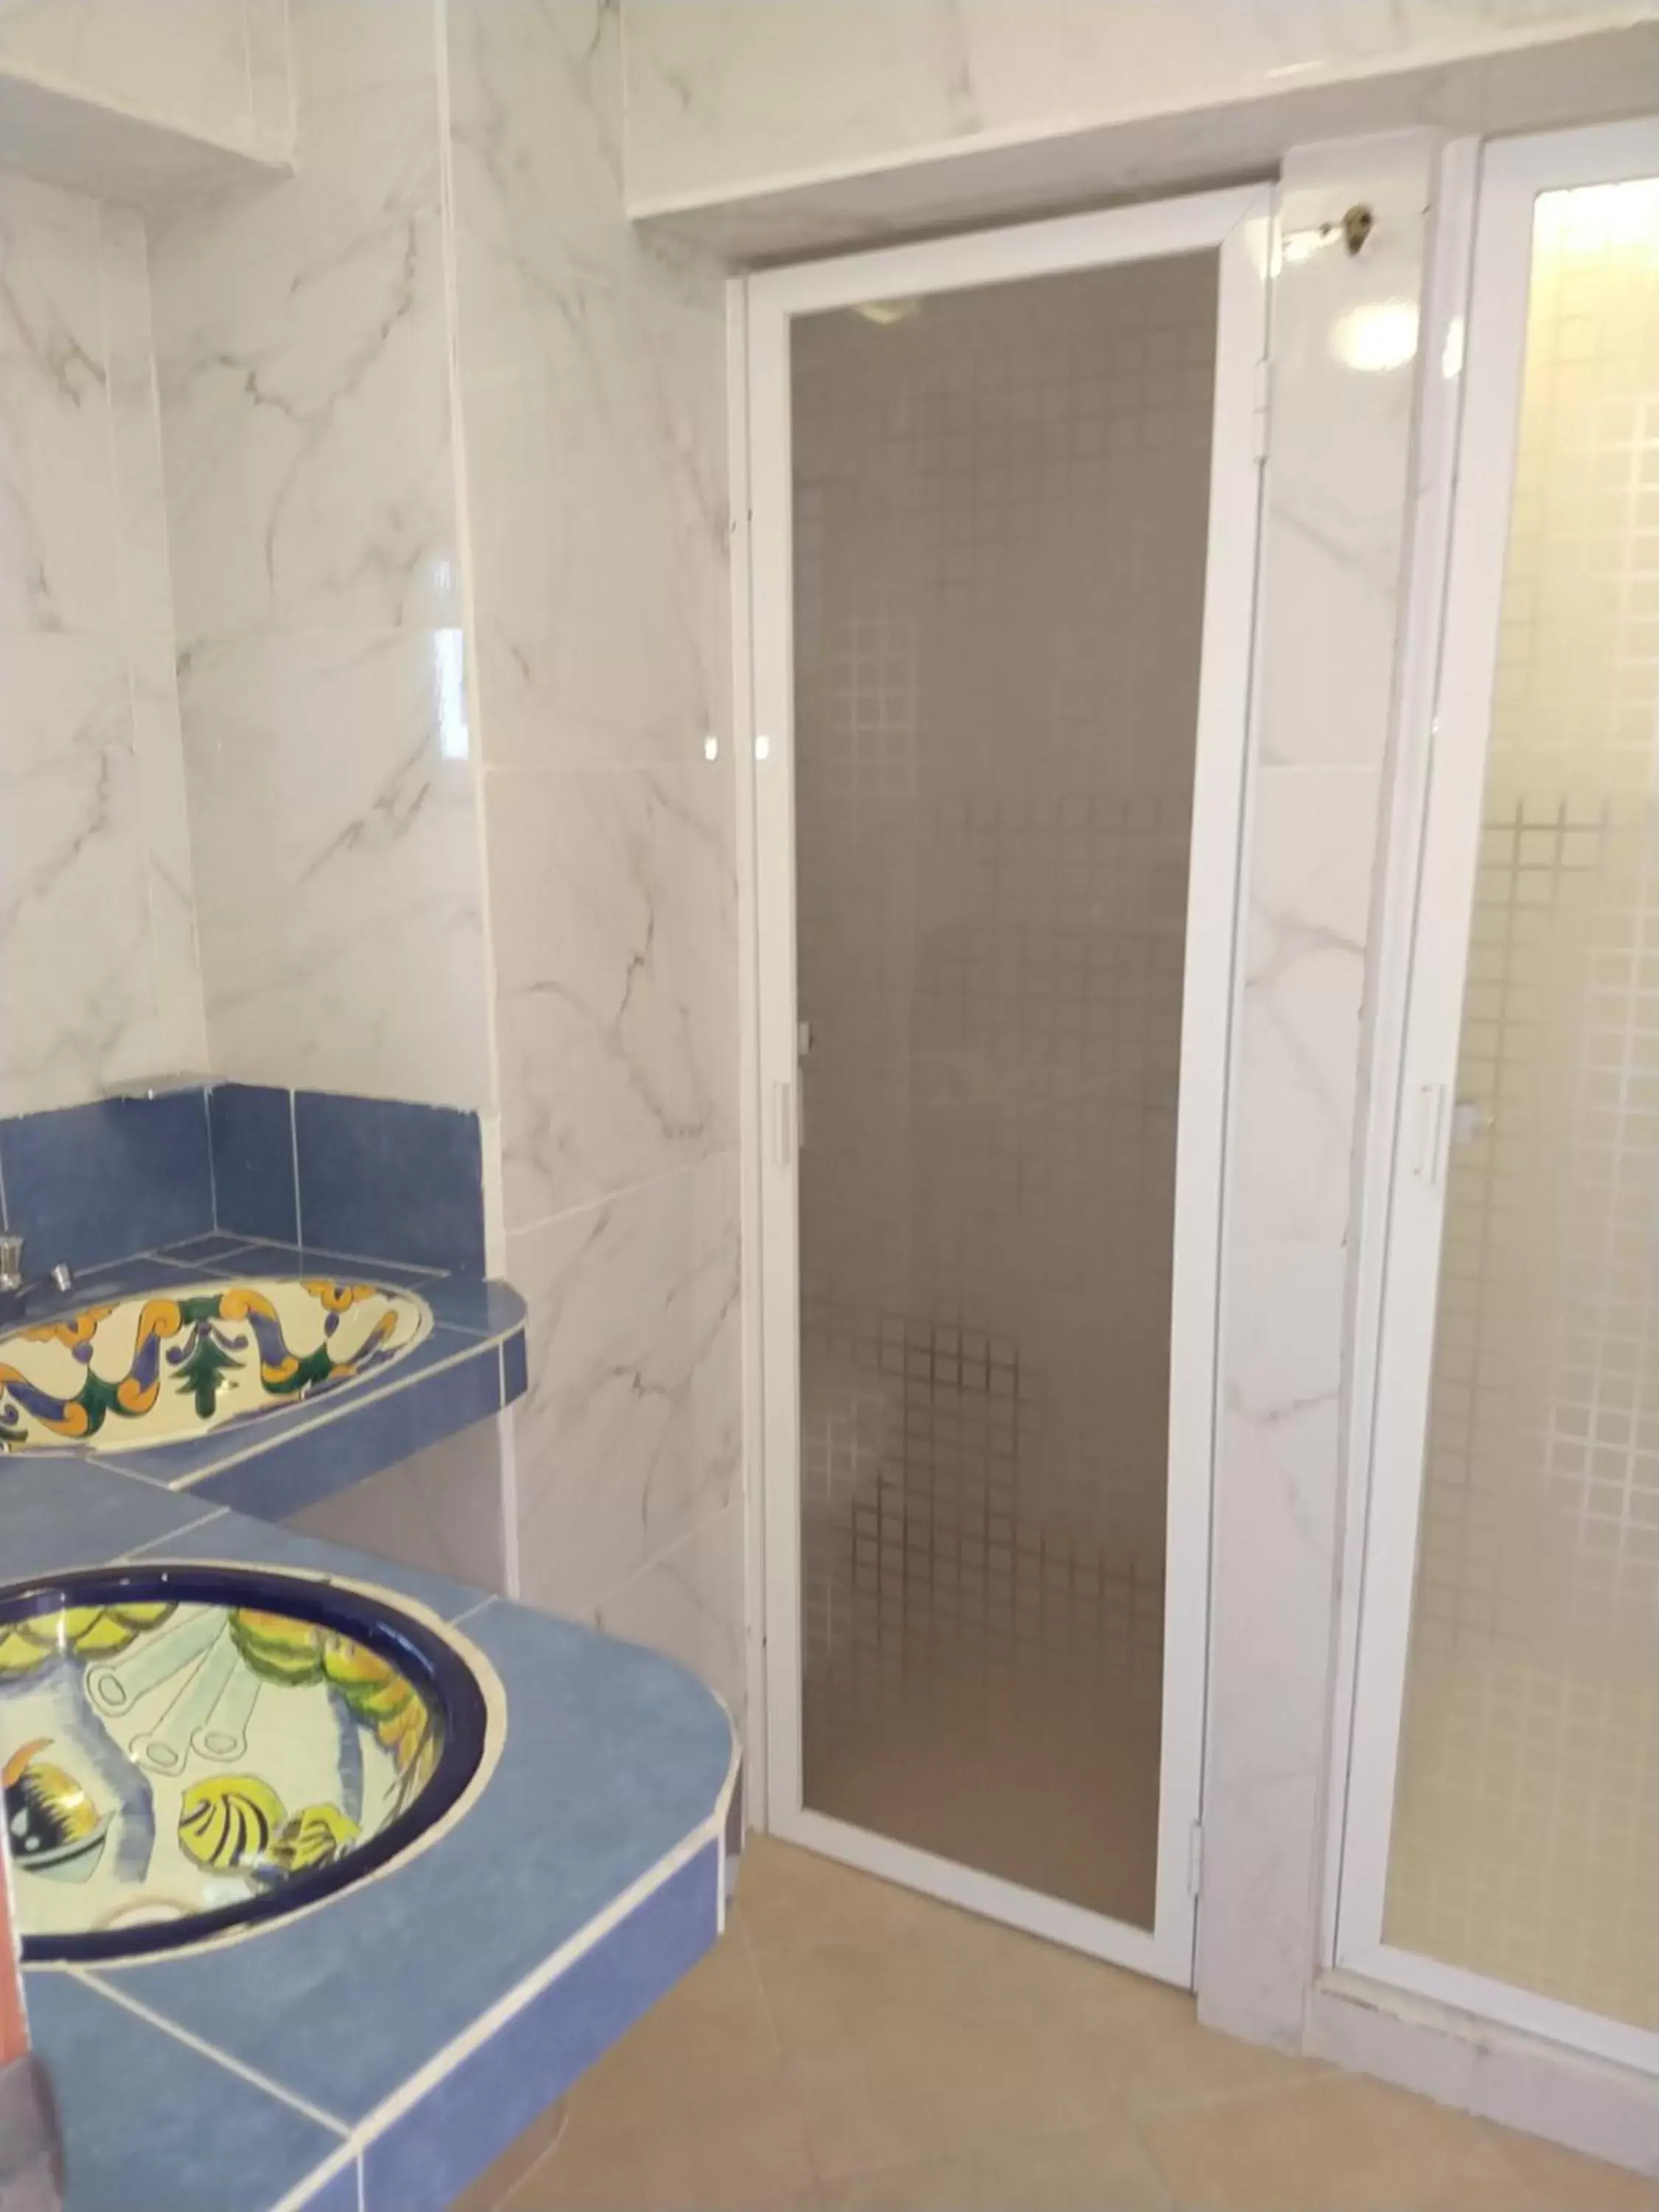 Bathroom in Hotel Alcatraces